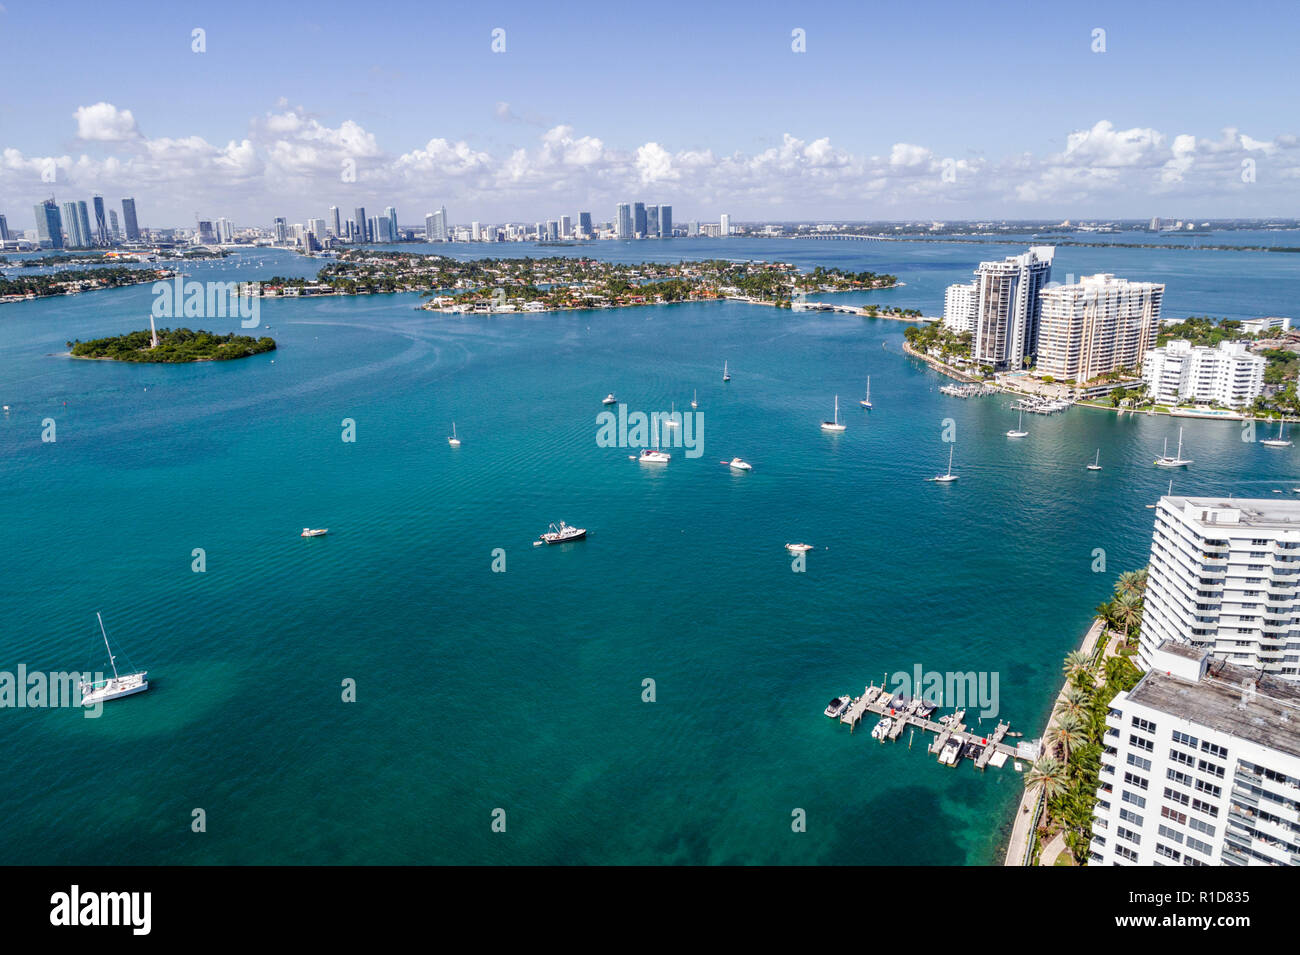 Miami Beach Florida, Biscayne Bay Water, Luftaufnahme aus der Vogelperspektive oben, Besucher reisen Reise touristischer Tourismus Wahrzeichen Kultur Stockfoto